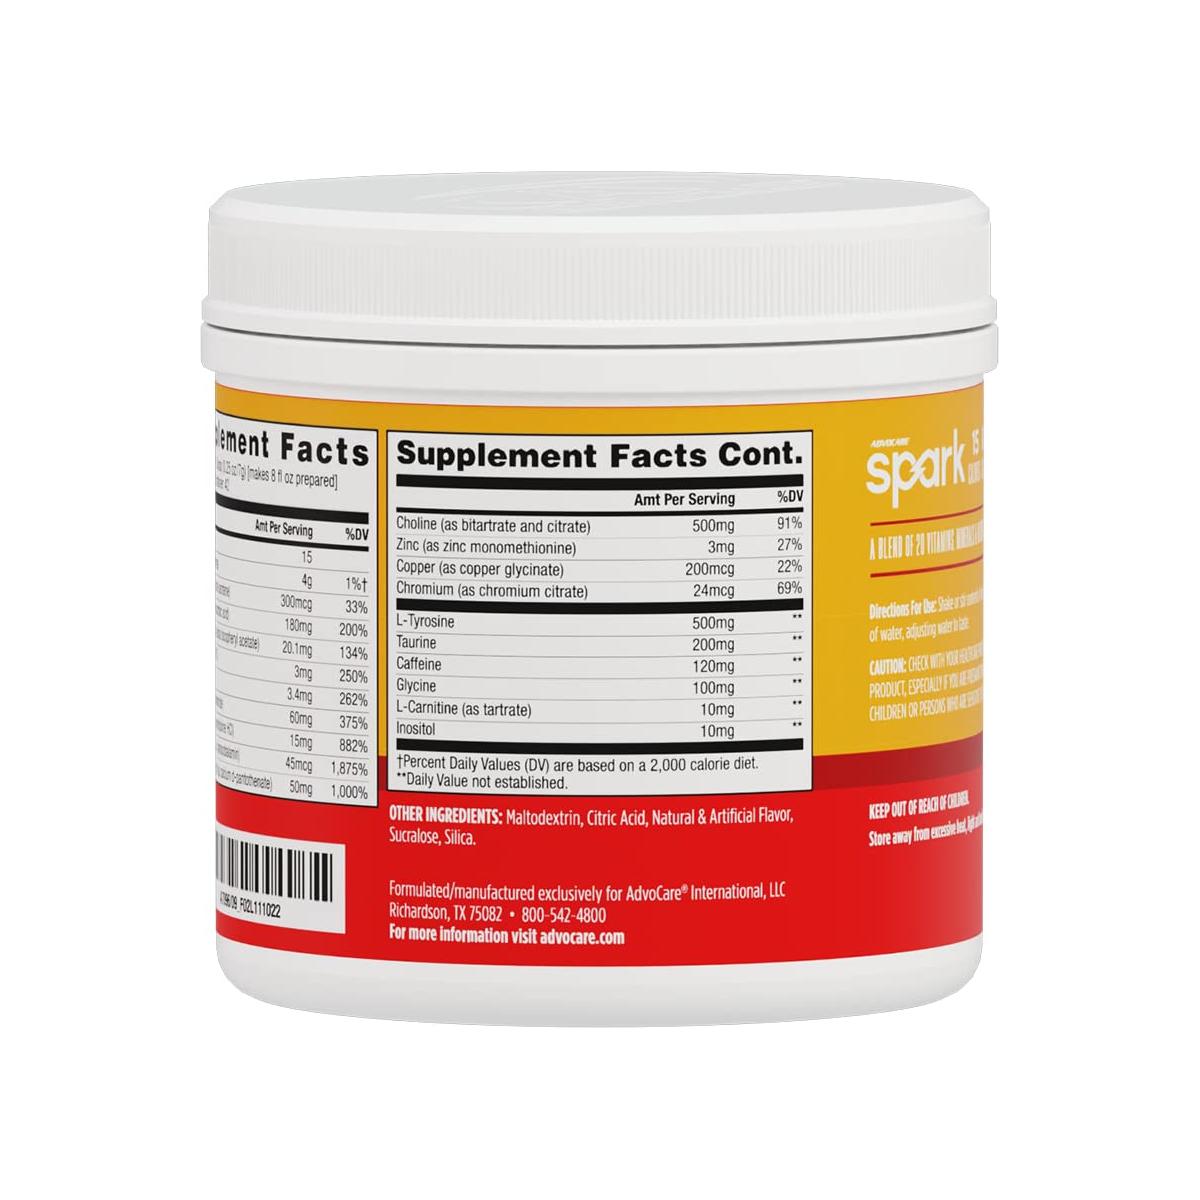  AdvoCare Spark Vitamin & Amino Acid Supplement - Focus